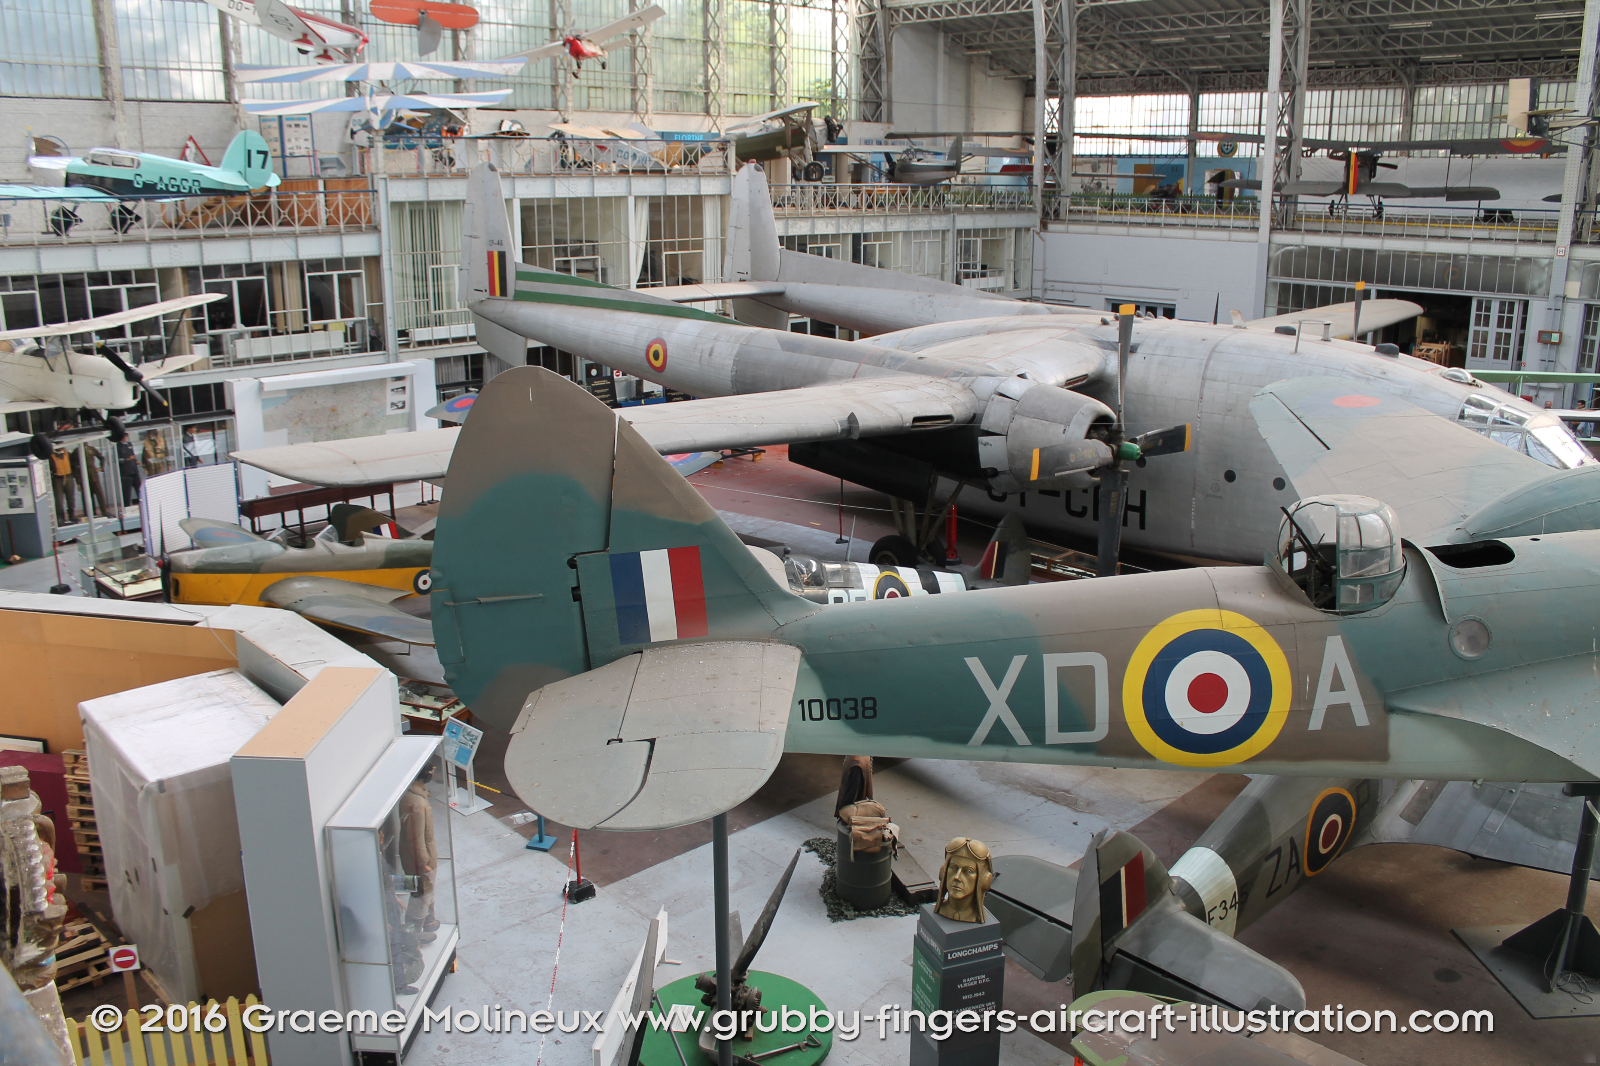 Bristol_Blenheim_MkIV_Walkaround_10083_RAF_Belgium_Museum_2015_06_GraemeMolineux